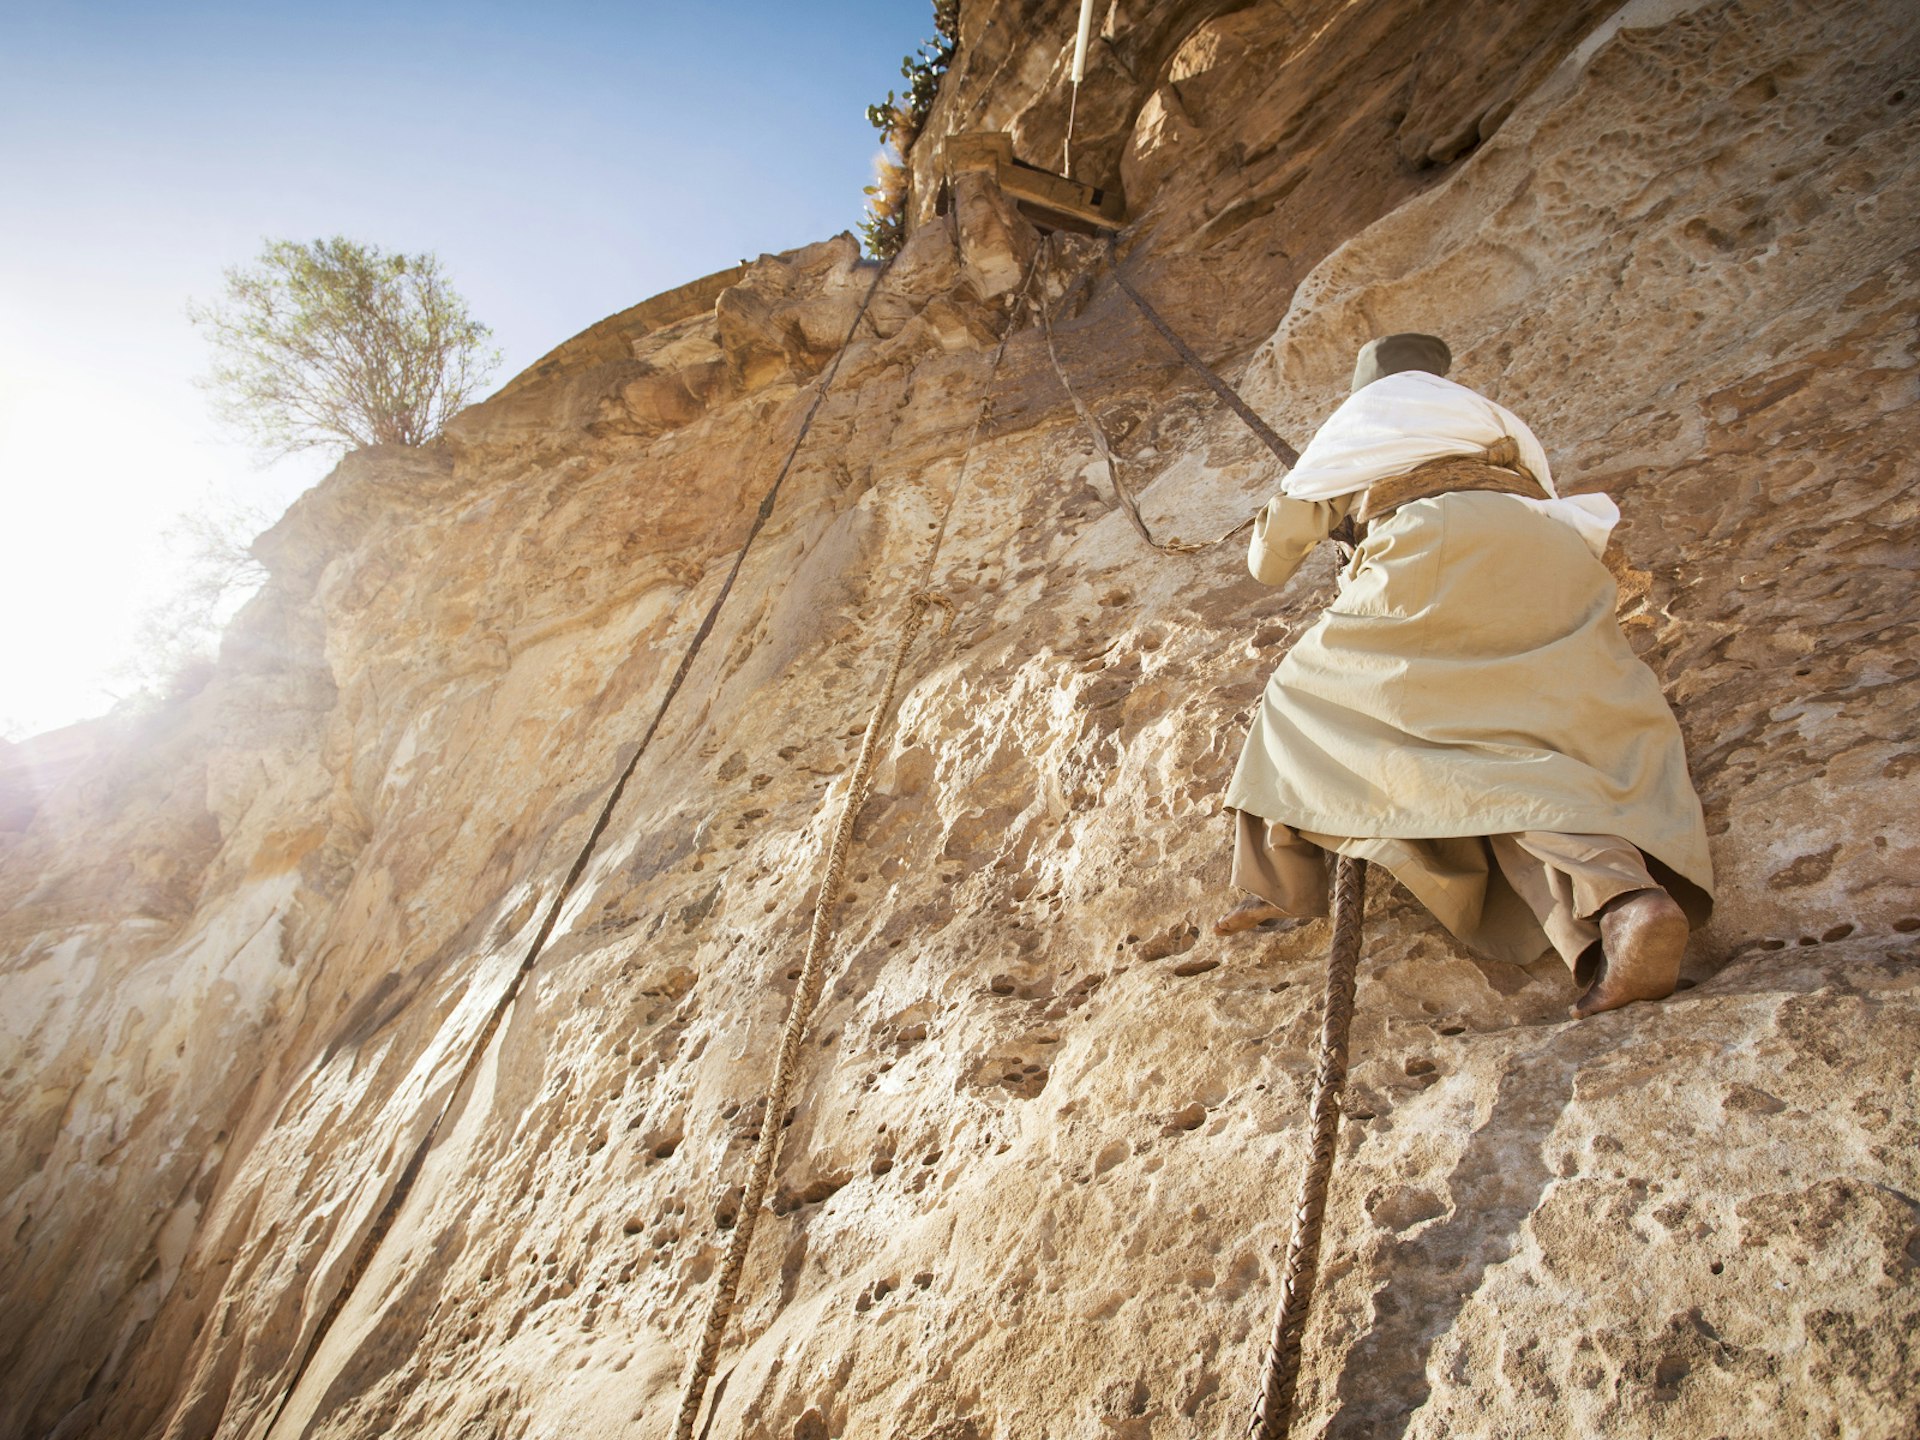 A monk scales the sheer rock face to reach Debre Damo's mountaintop monastery